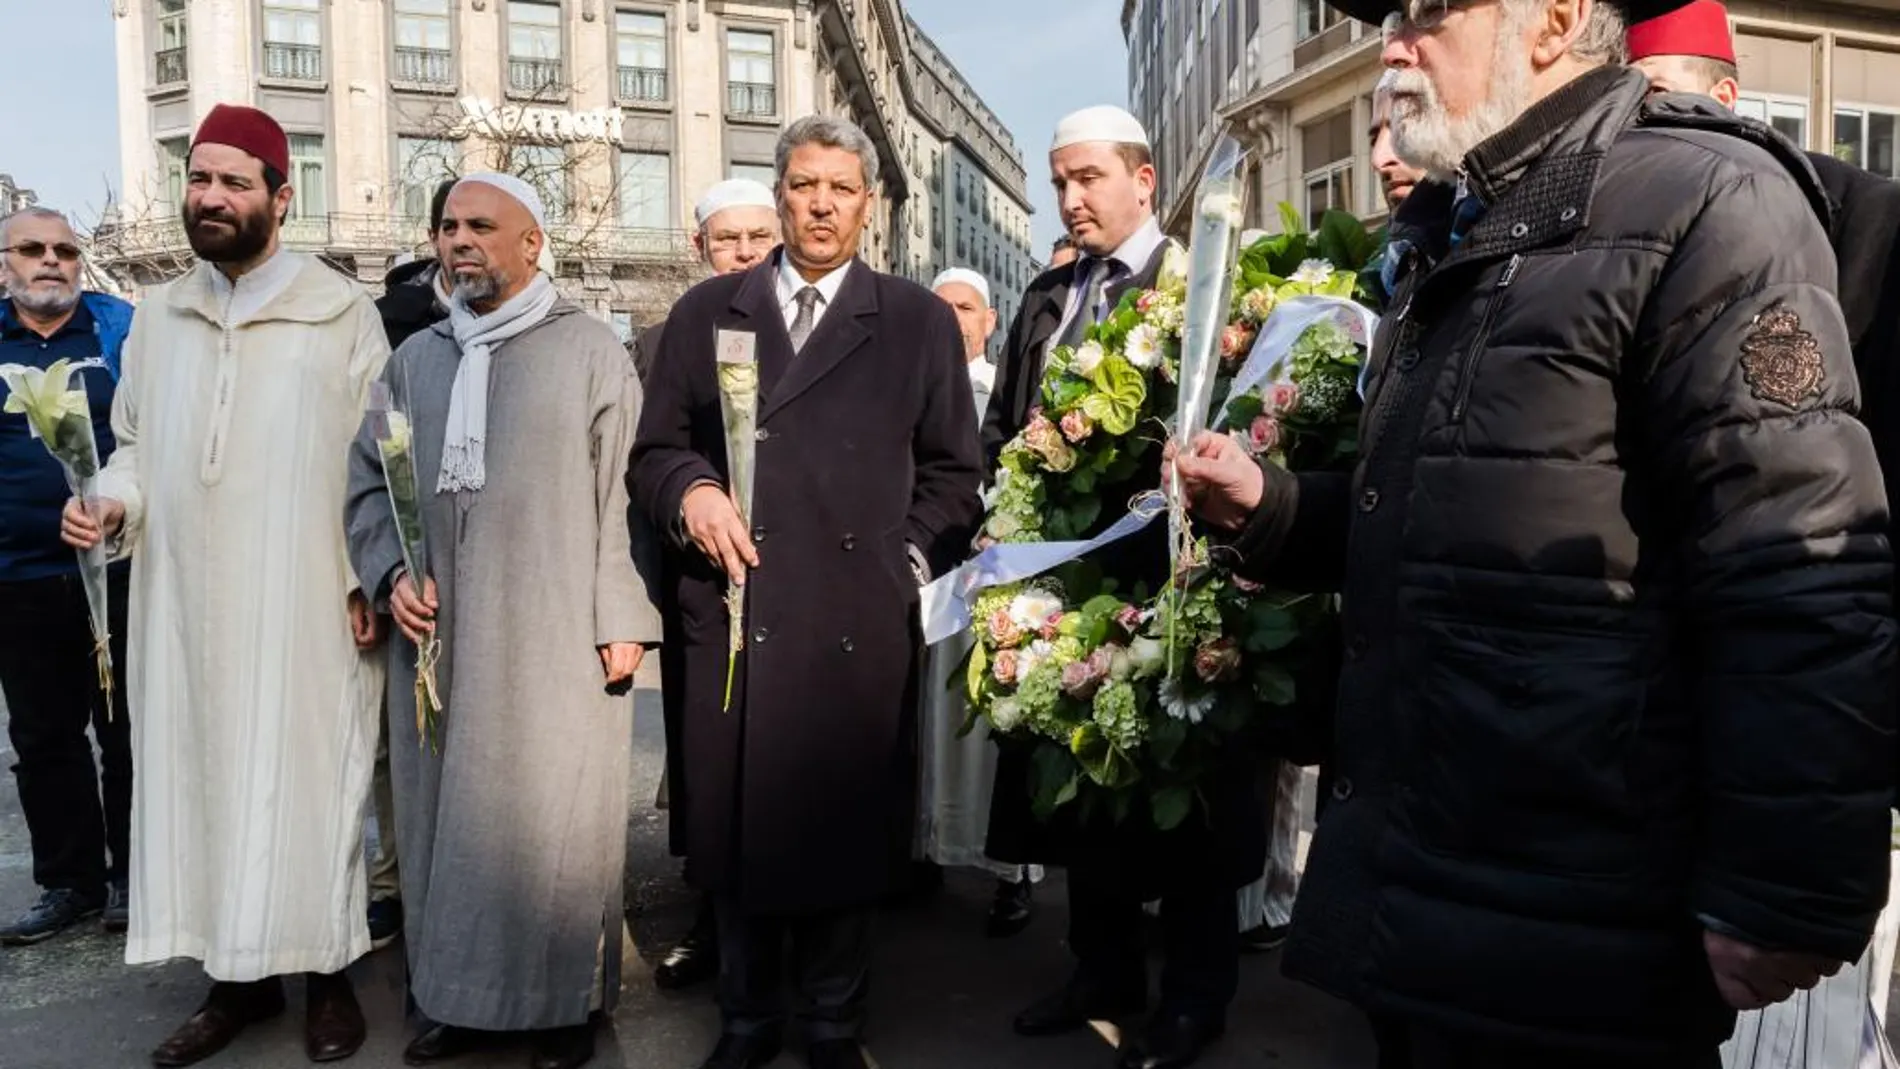 El presidente de la asociación oficial de los musulmanes en Bélgica, Salah Echallaoui, y al gran rabino de Bruselas, Albert Guigui, junto a otros religiosos en el homenaje